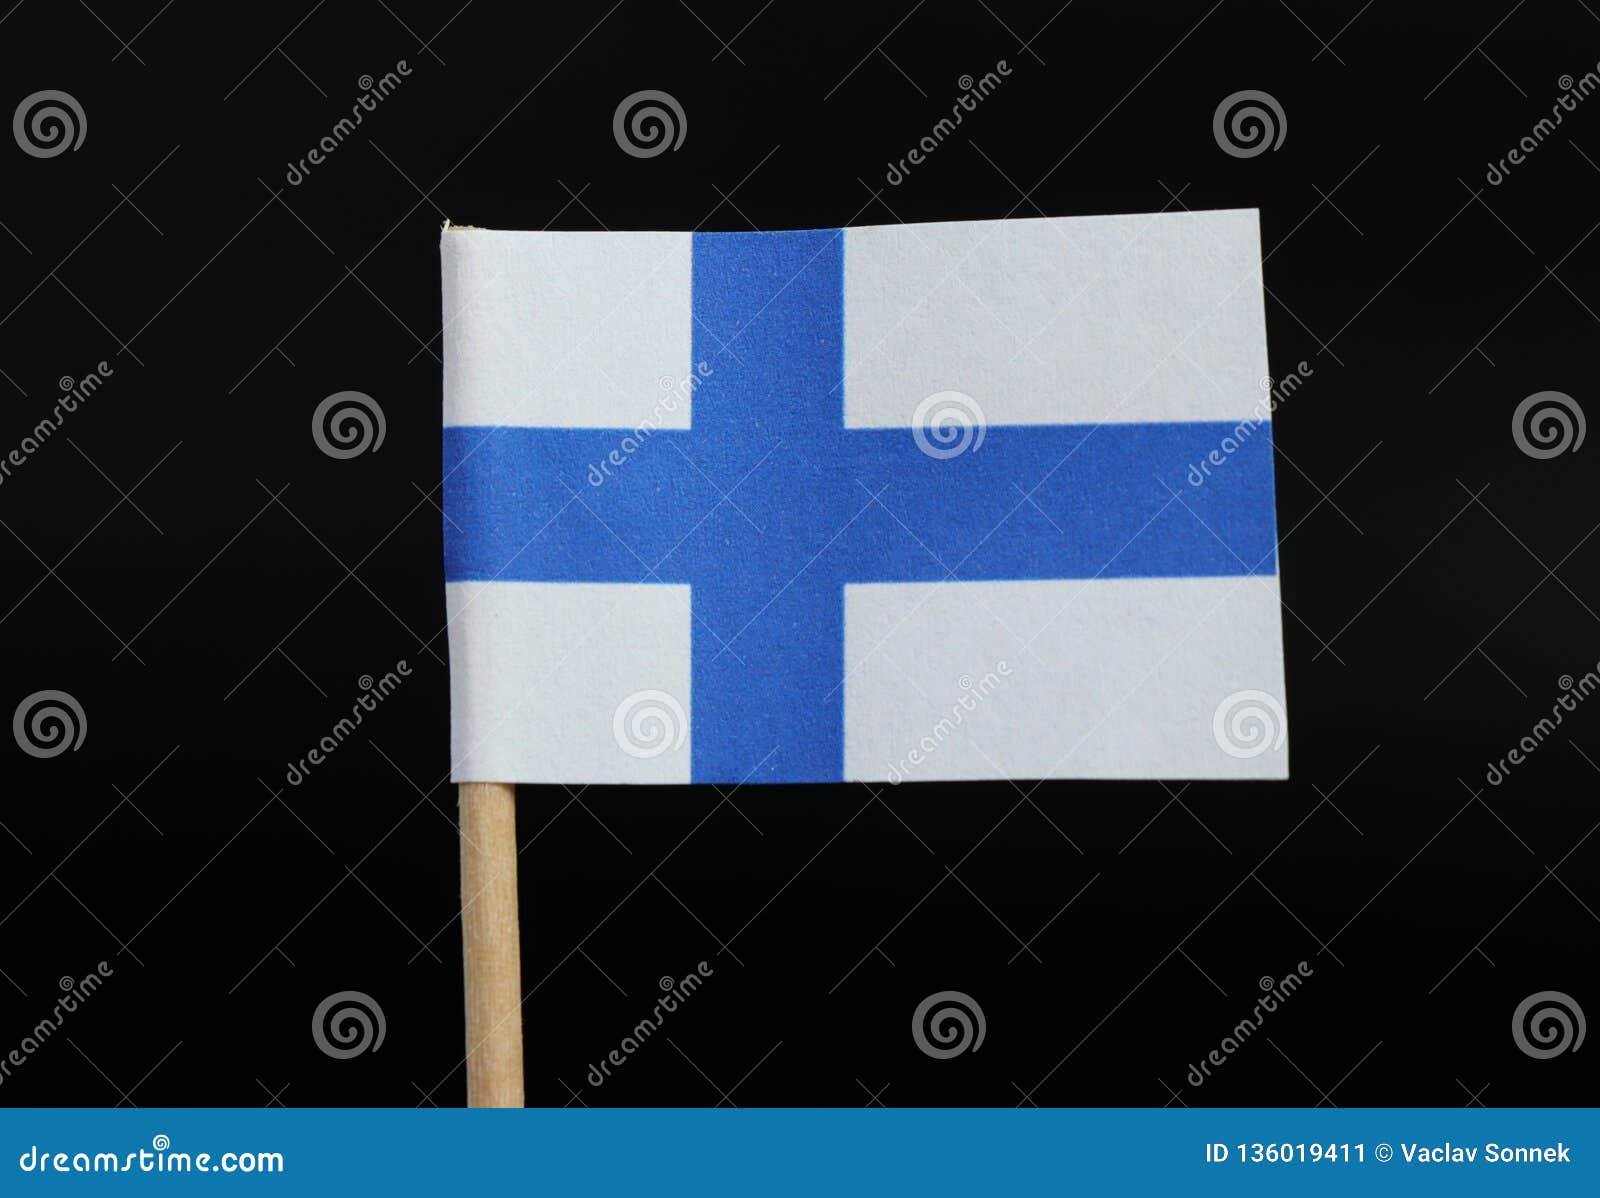 Flag of Finland - Lá cờ của Finland được thiết kế đơn giản nhưng vô cùng ấn tượng với màu xanh sắc vàng và dấu tích của sao. Đây là một lá cờ đầy tinh thần của đất nước, đại diện cho sự hiện đại, sáng tạo và niềm vui trong cuộc sống. Hãy cùng xem thêm hình ảnh đẹp về lá cờ Finland để khám phá sự tuyệt vời của nó.